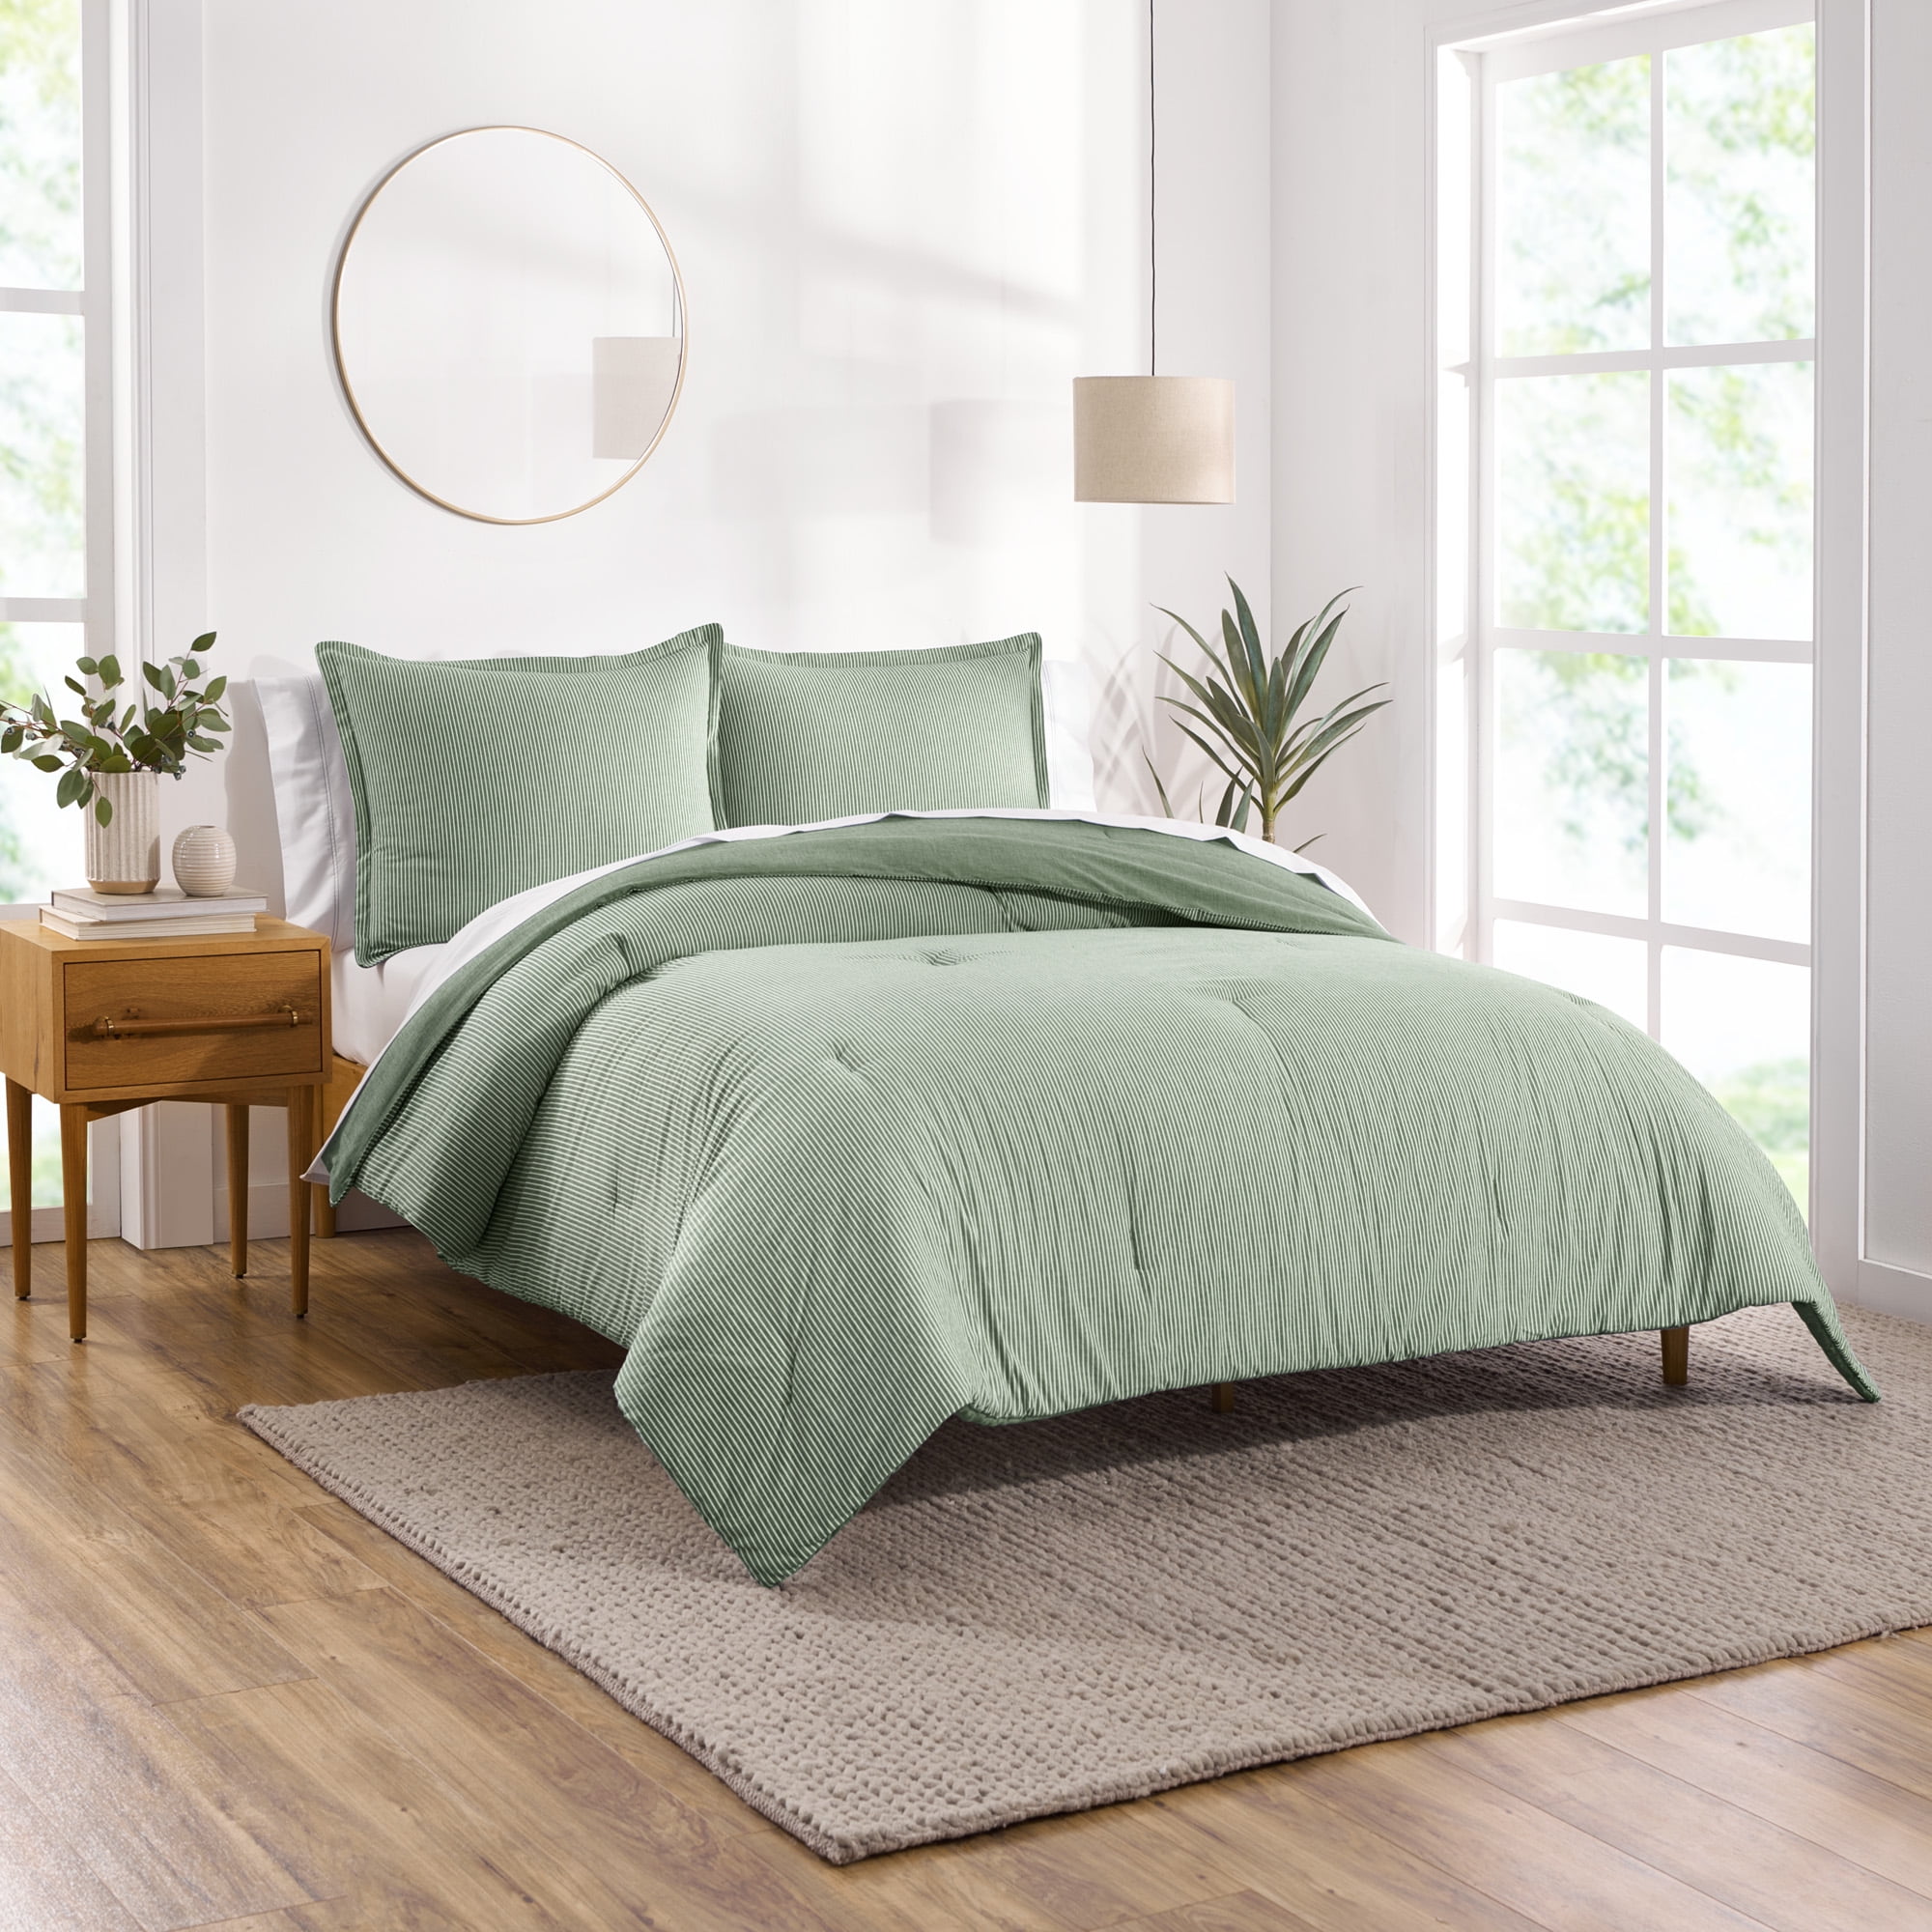 Modern Comfy Tee Green Stripe Organic Cotton Jersey Kids Pillow